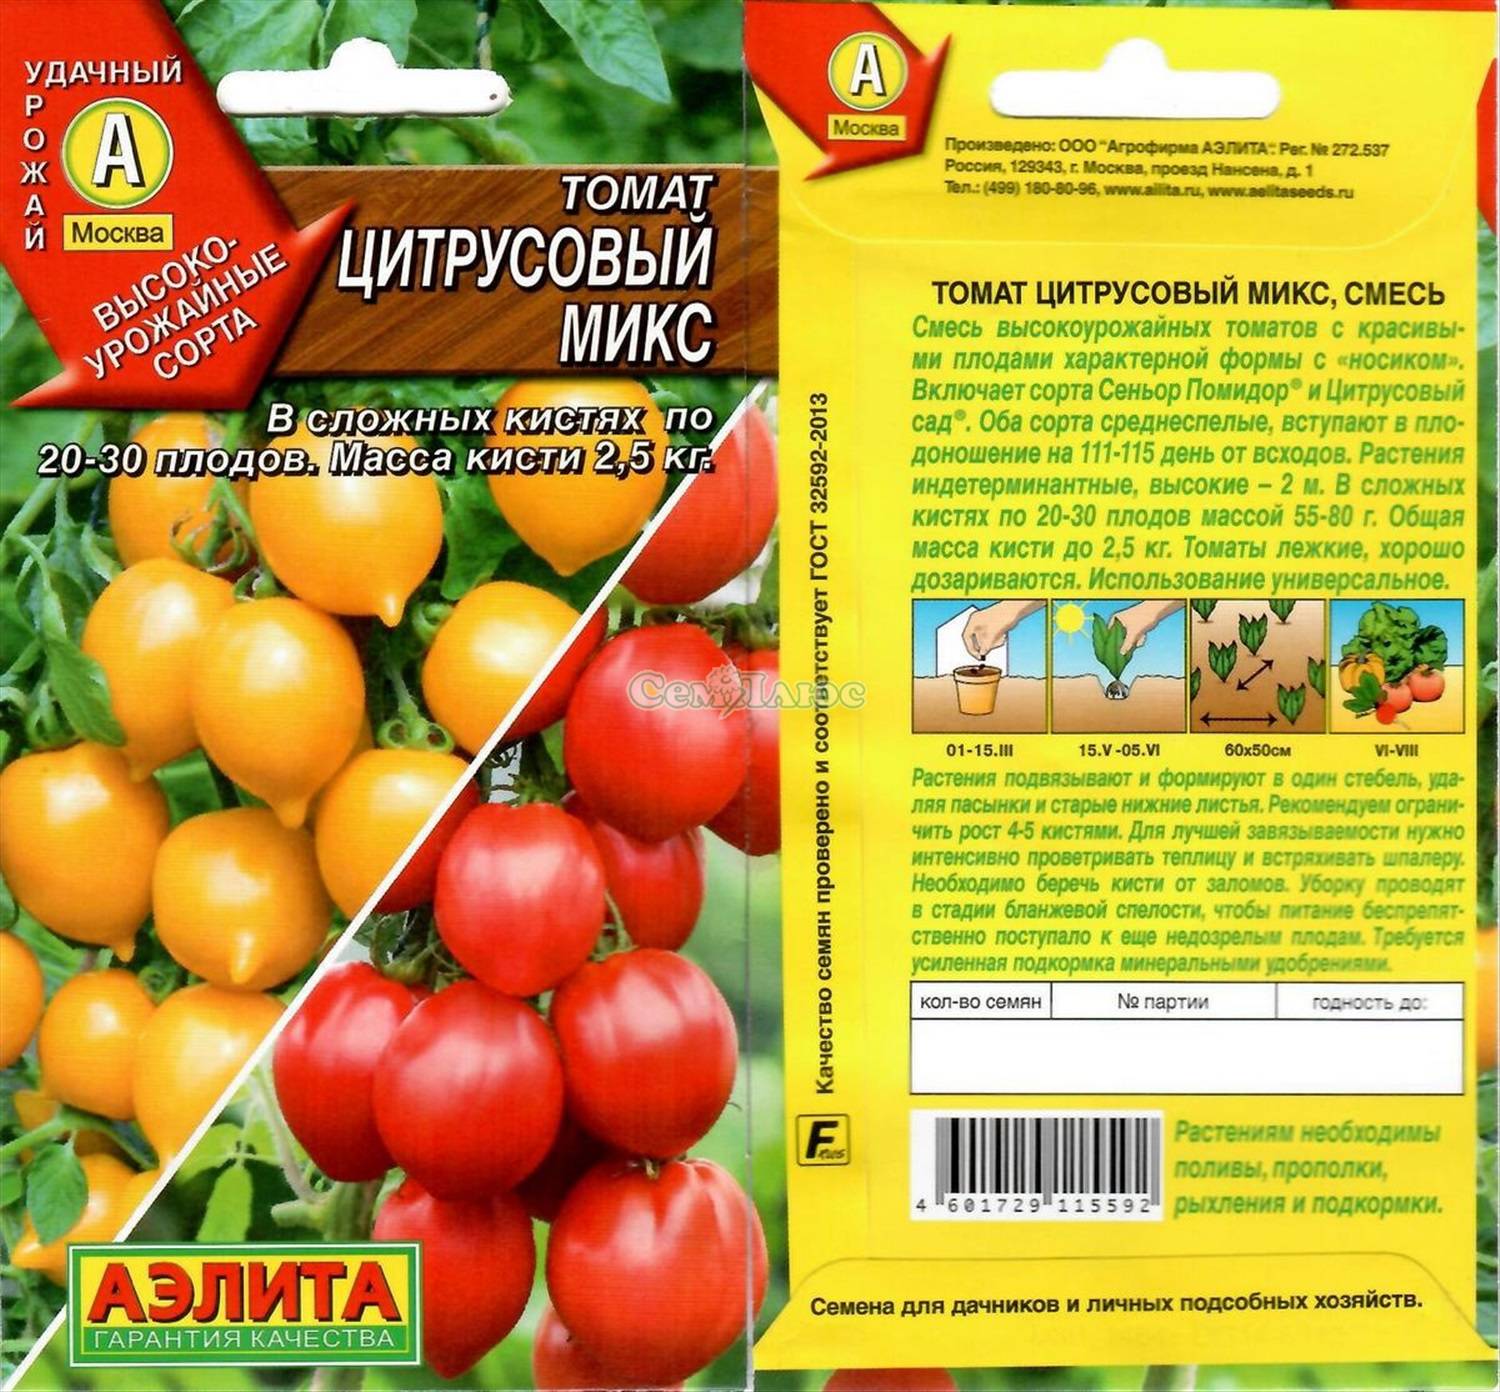 Описание томата марманде и агротехника выращивания сорта